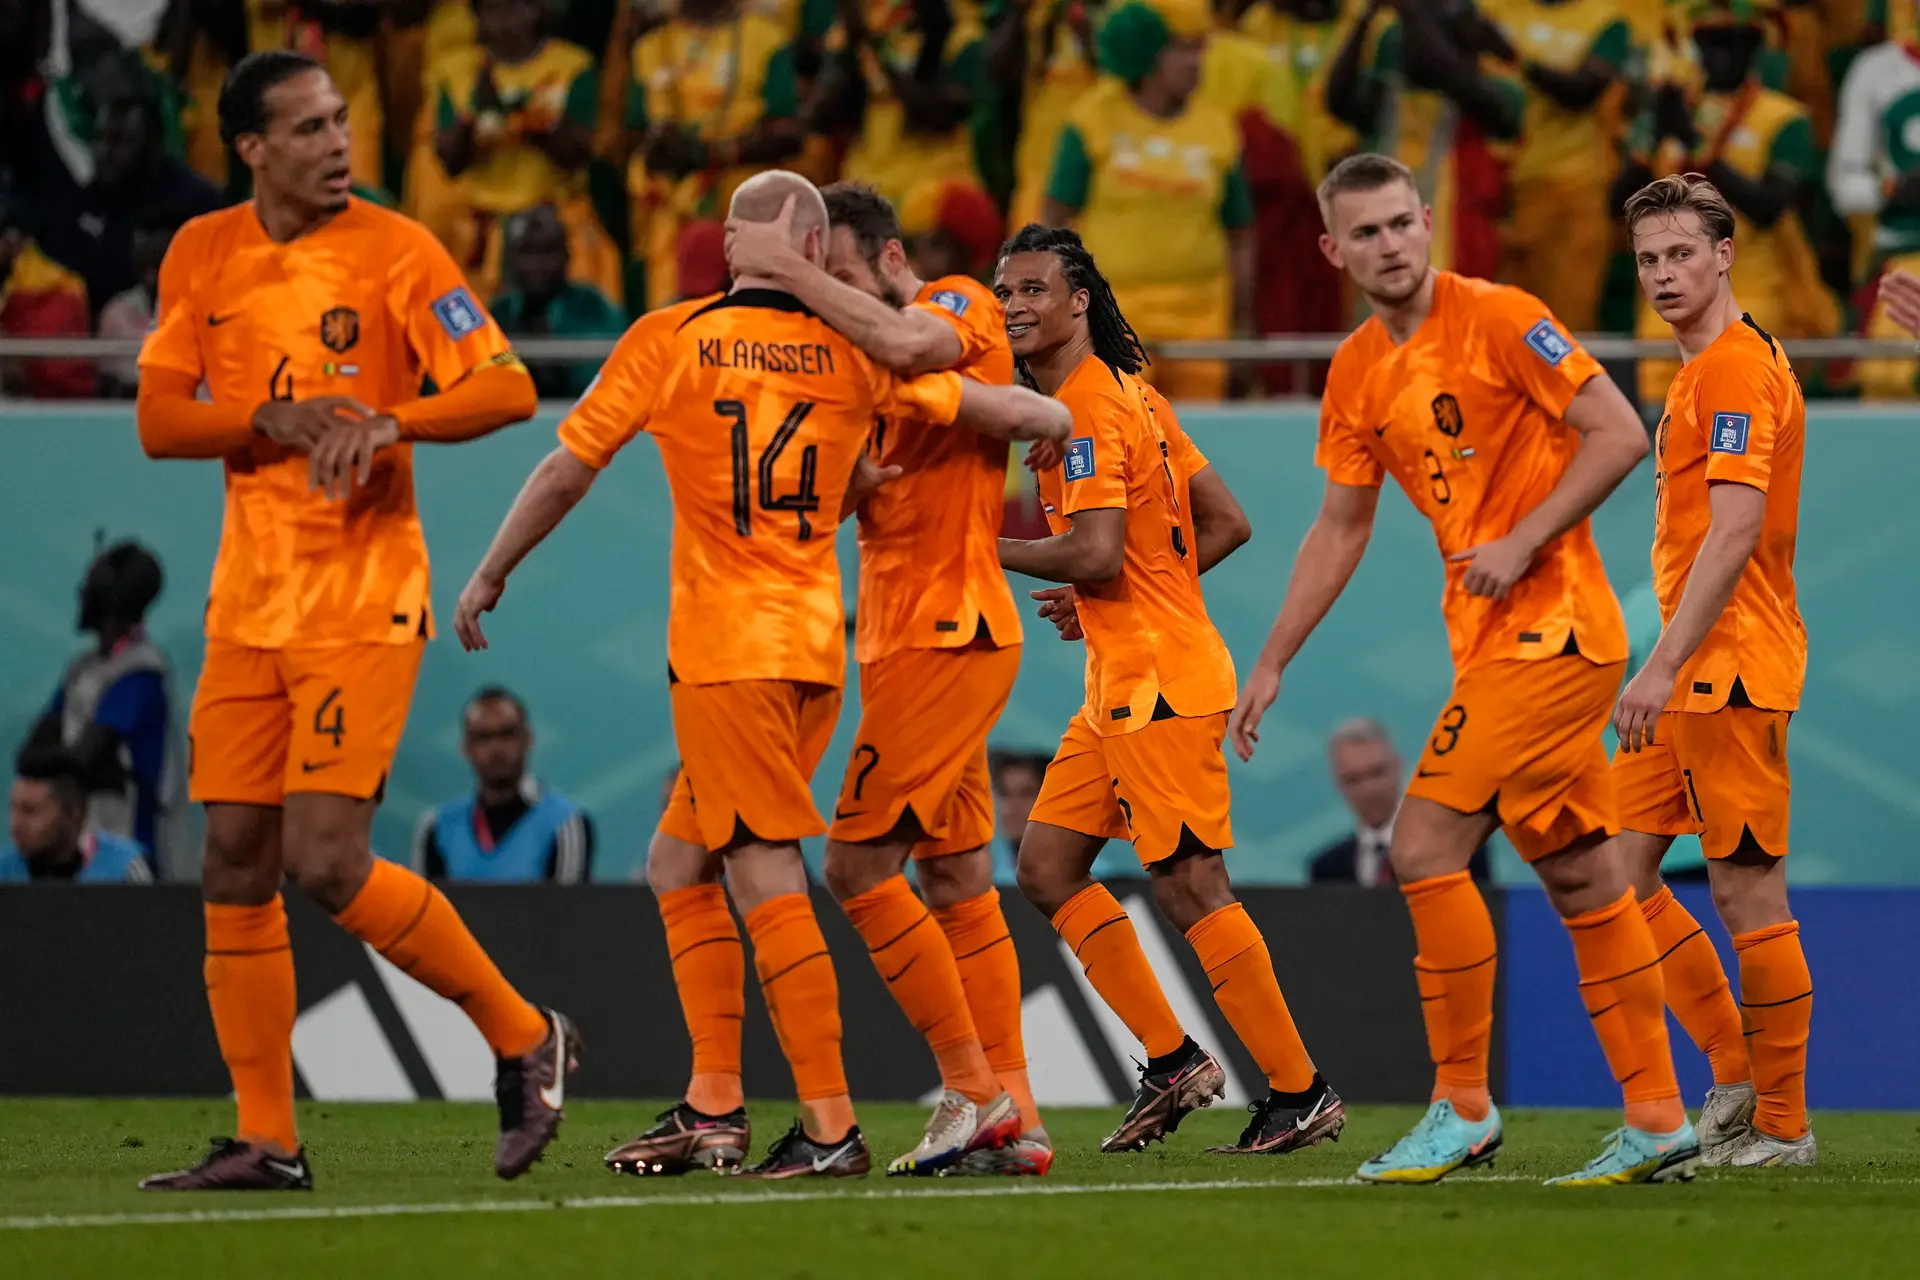 Futebol/Copa do Mundo: Os Países Baixos venceram o Senegal por 2-0